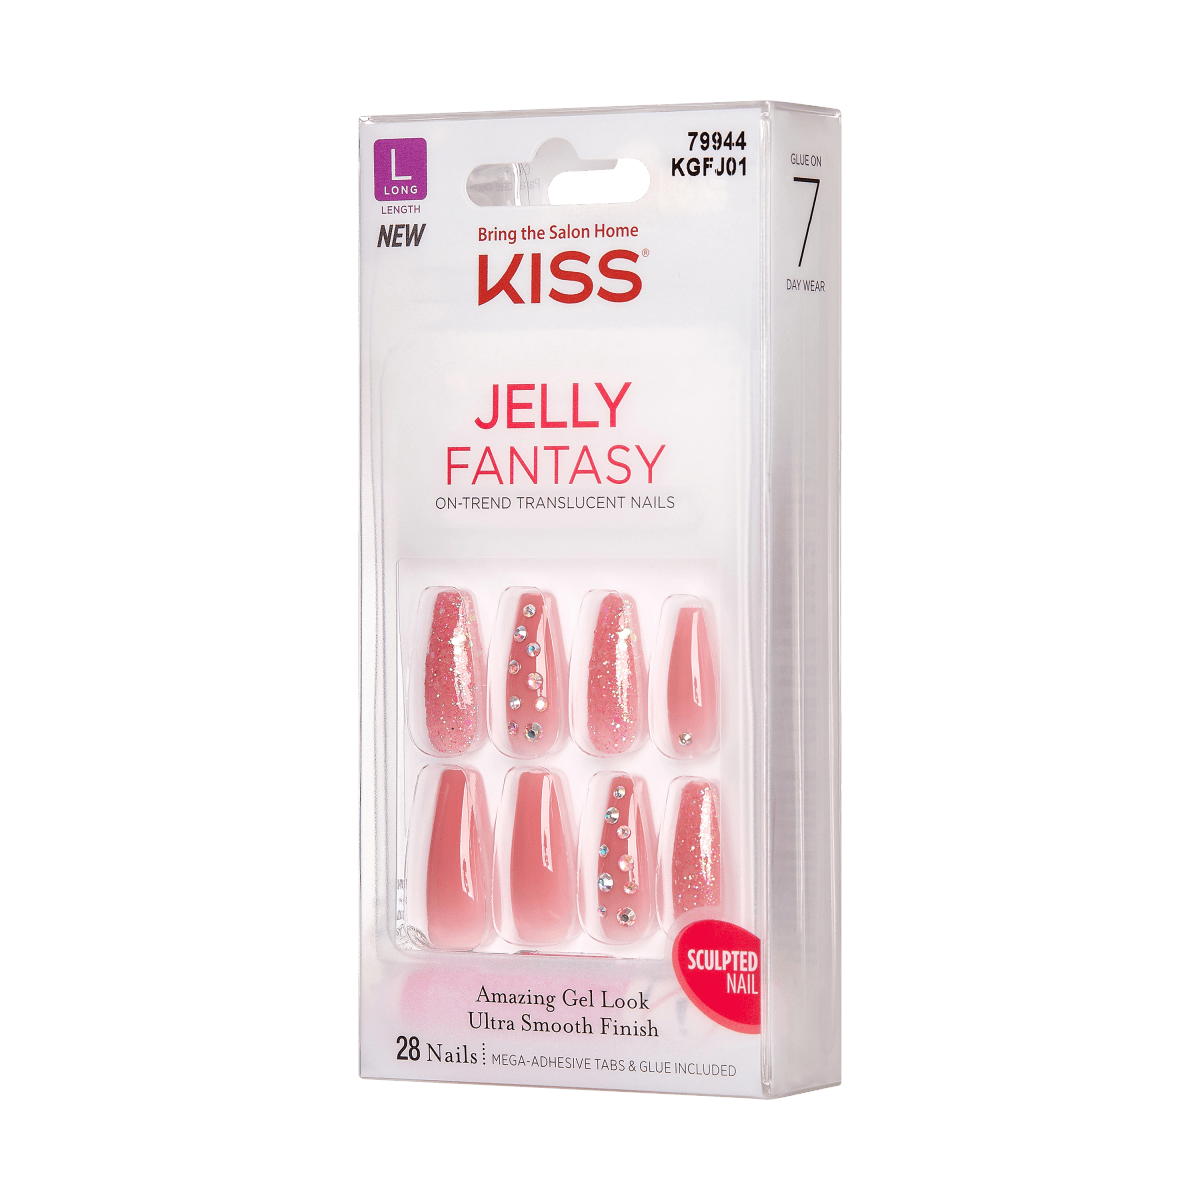 KISS Gel Fantasy Jelly Nails - Be Jelly